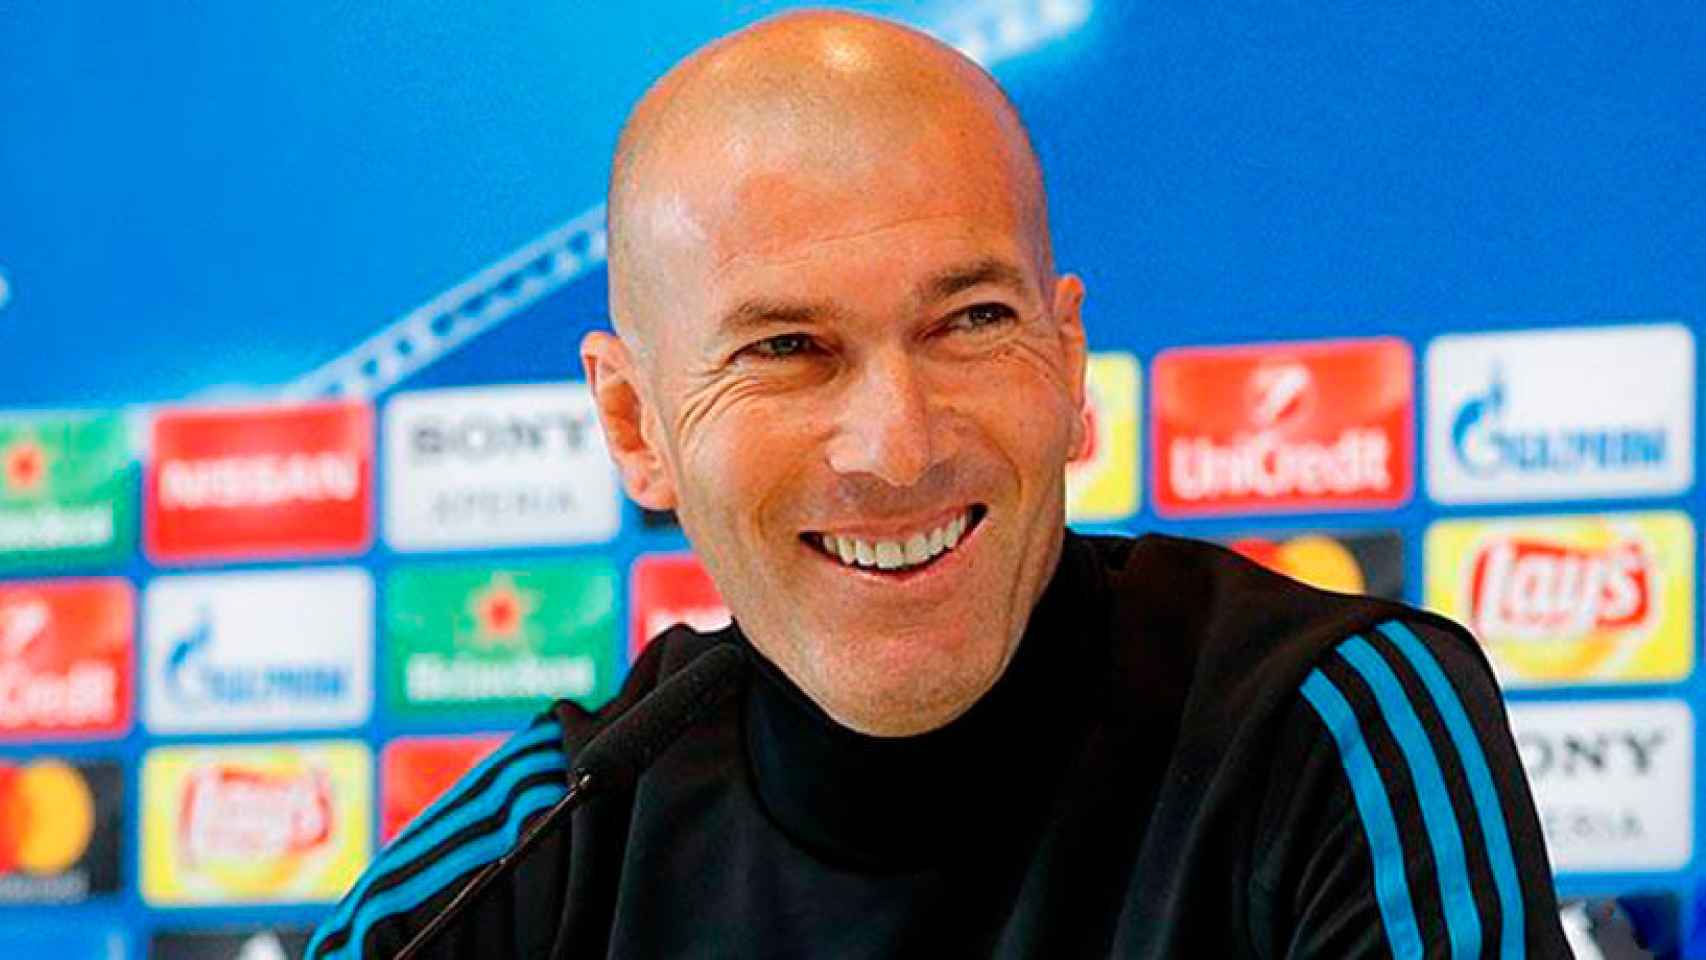 Zinedine Zidane, en rueda de prensa